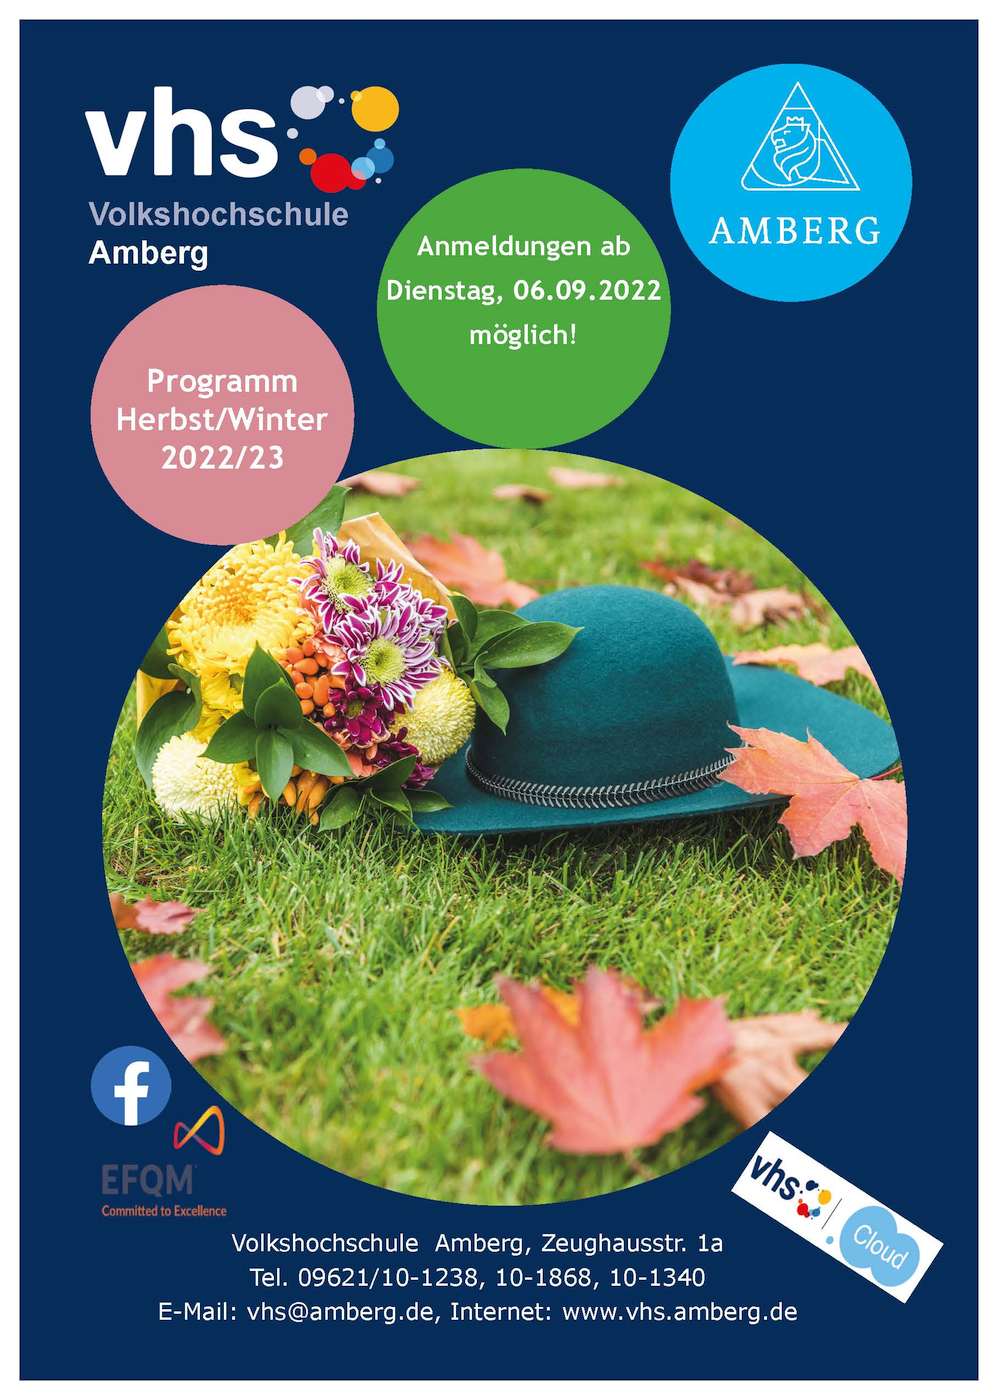 Die Volkshochschule Amberg startet ins Herbst- und Wintersemester